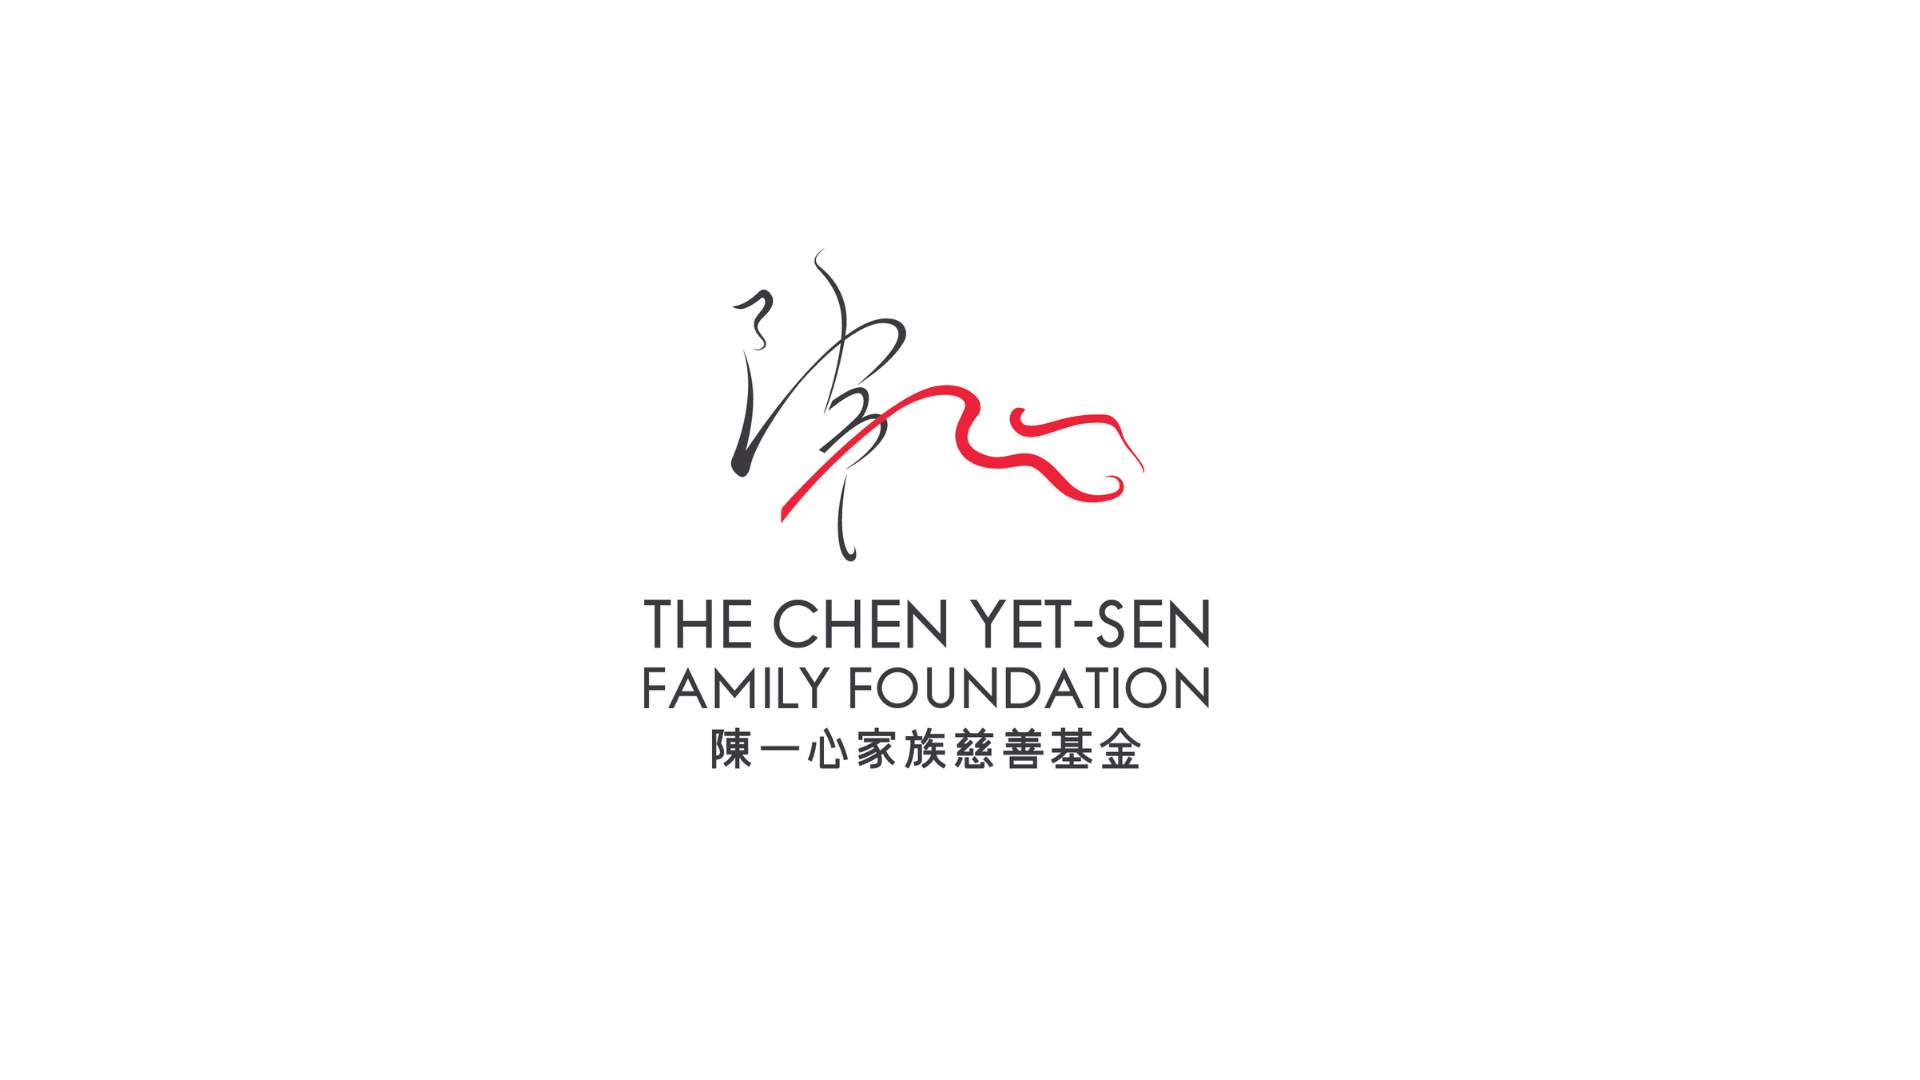 The Chen Yet Sen Family Foundation logo